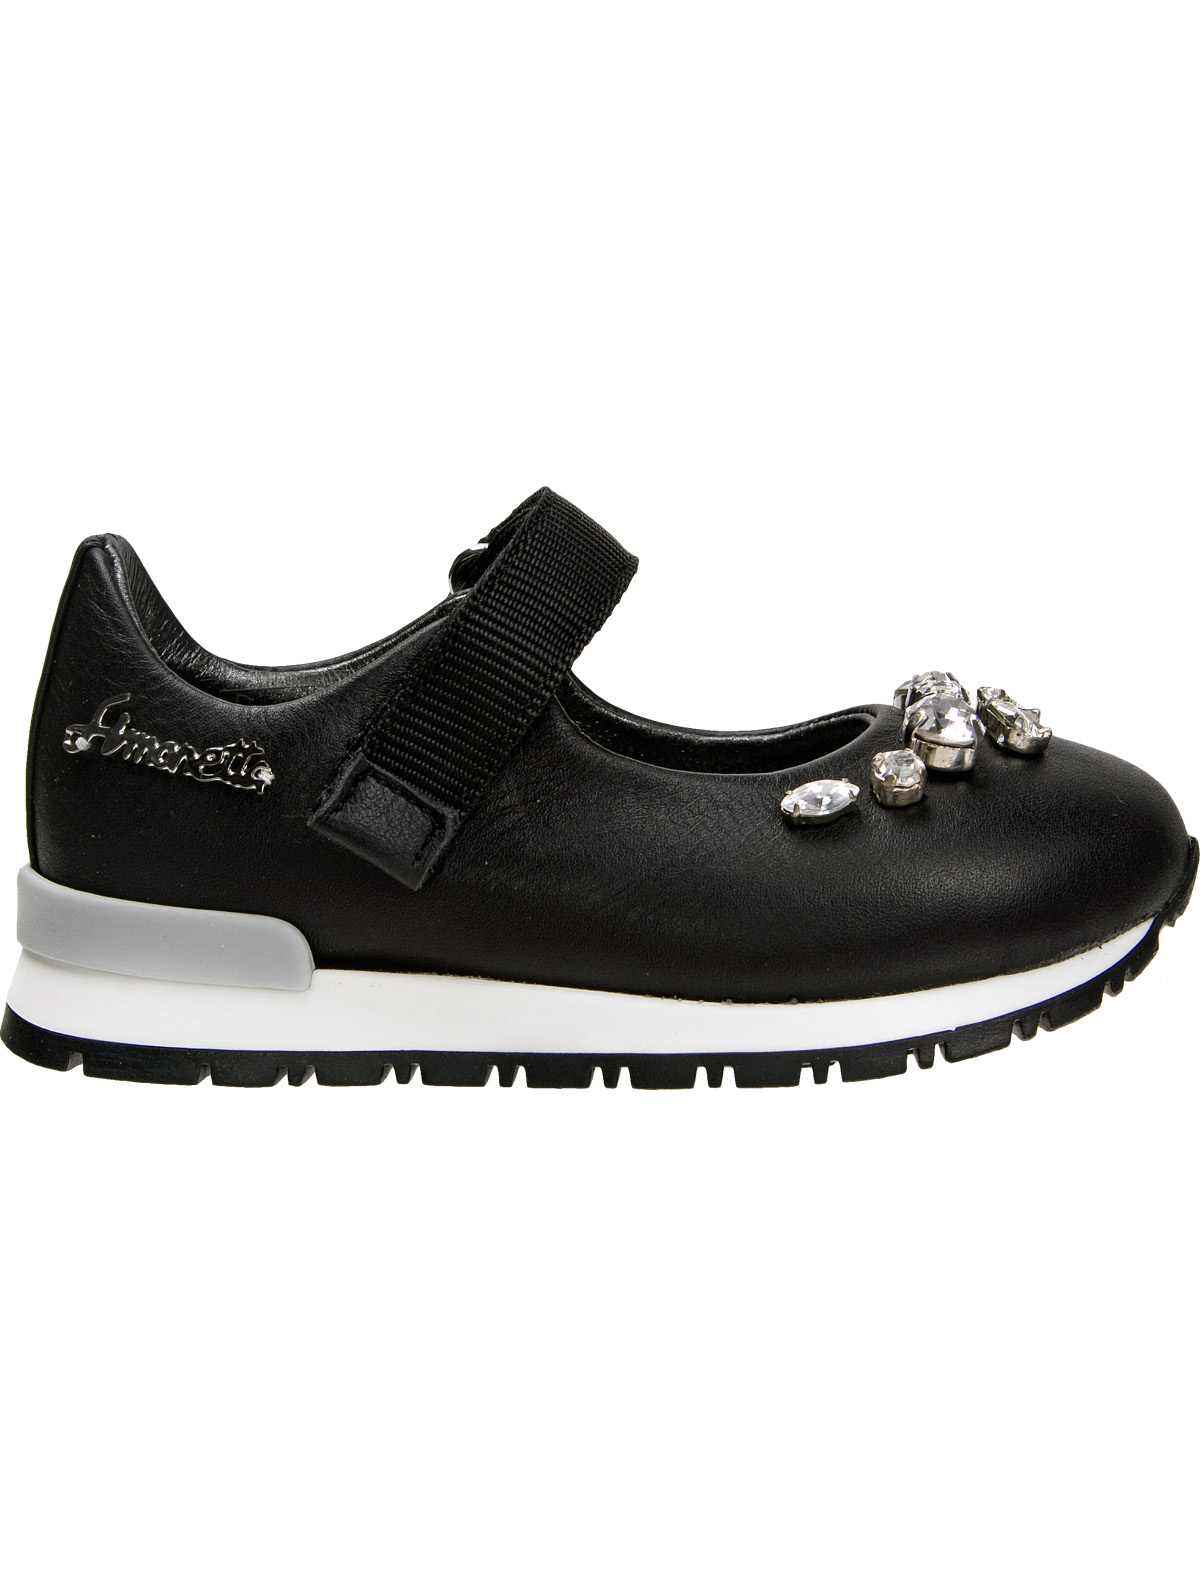 Туфли Simonetta 1912970, цвет черный, размер 23 2011109780340 - фото 2